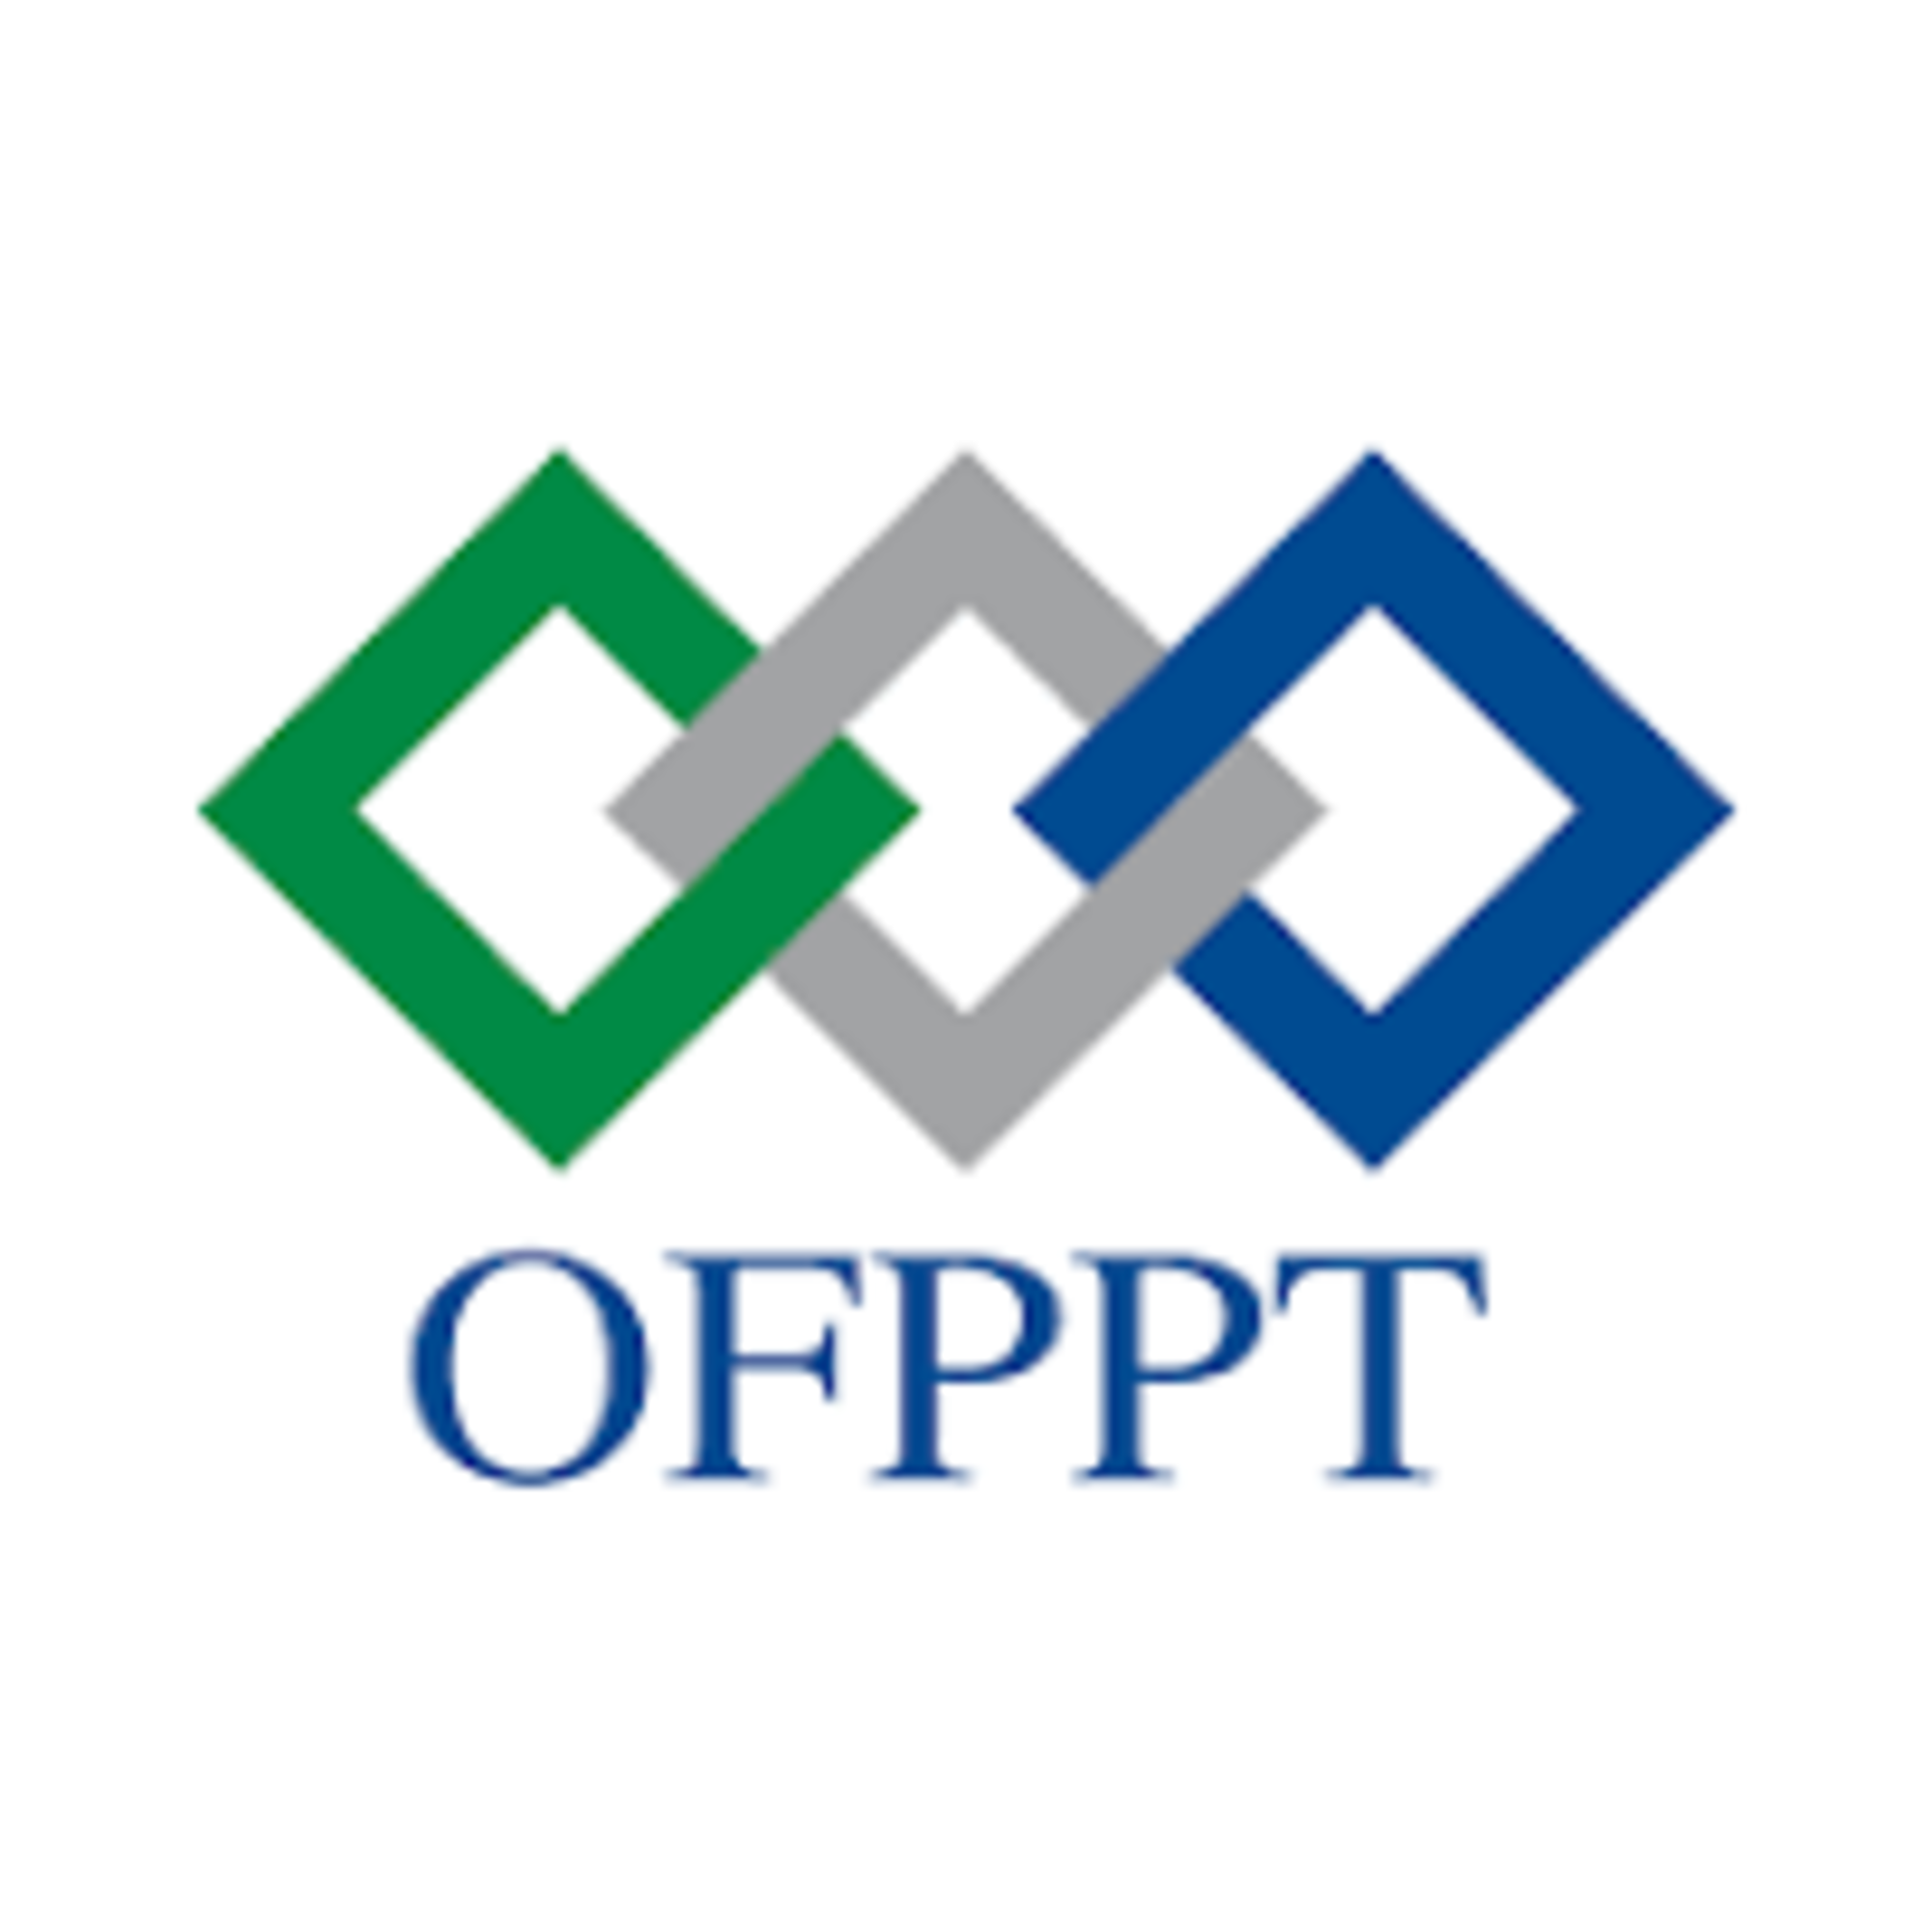 Découvrez un article proposant le téléchargement du logo de l'OFPPT au format Word. Obtenez facilement et gratuitement le logo officiel de l'OFPPT pour l'utiliser dans vos documents et présentations. Téléchargez dès maintenant le logo de l'OFPPT en format Word pour ajouter une touche professionnelle à vos projets liés à l'OFPPT. Simplifiez votre travail avec cet article proposant le téléchargement du logo de l'OFPPT en format Word.